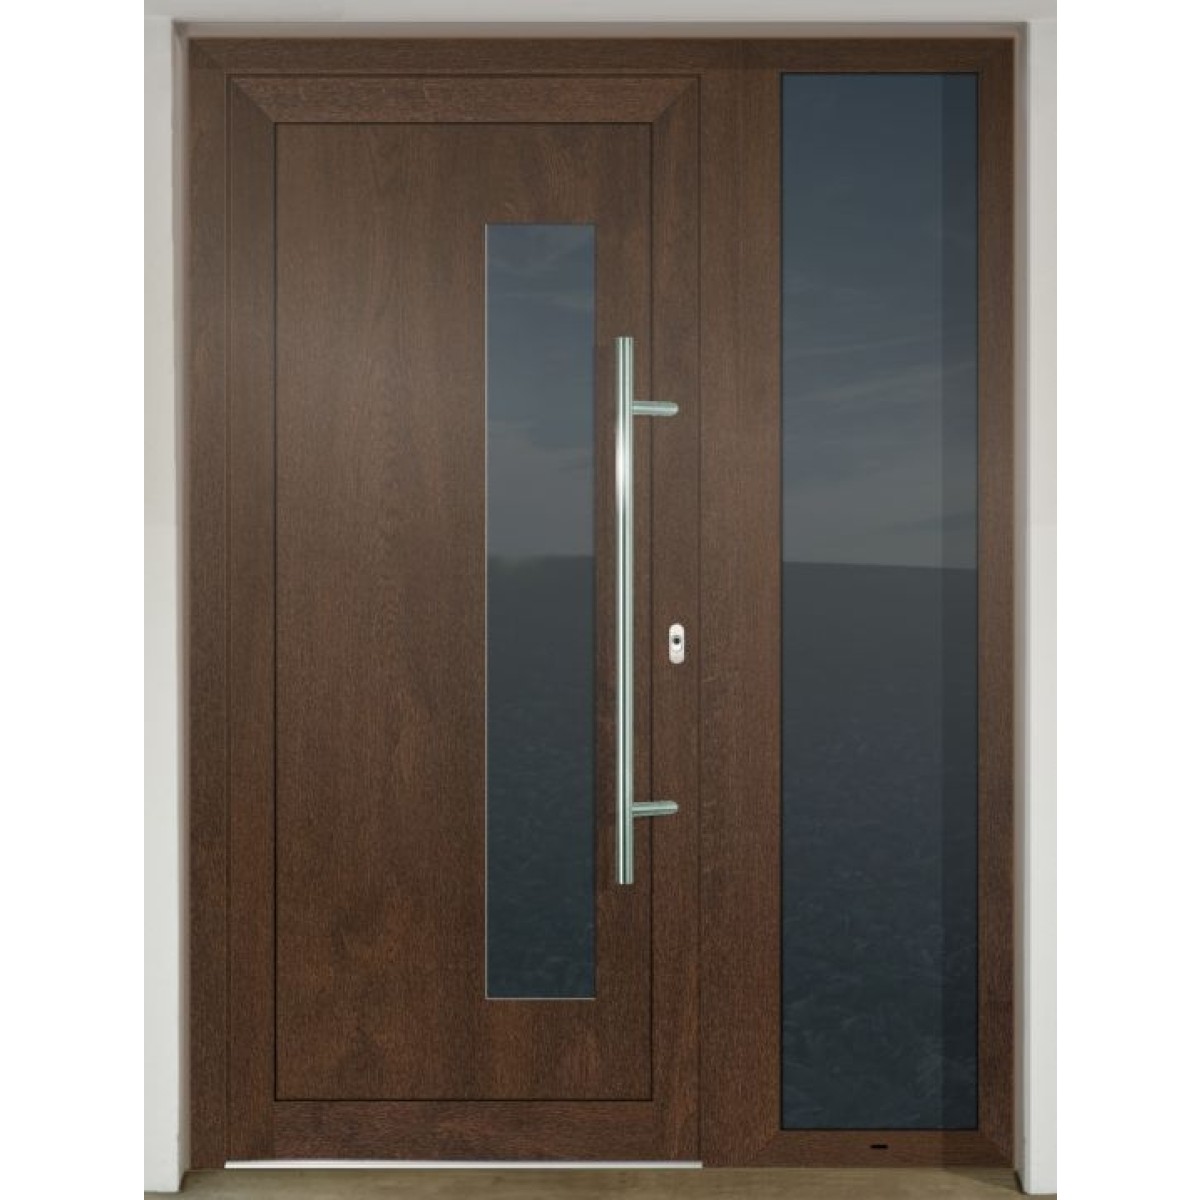 Gava HPL 913 Nussbaum - entry door